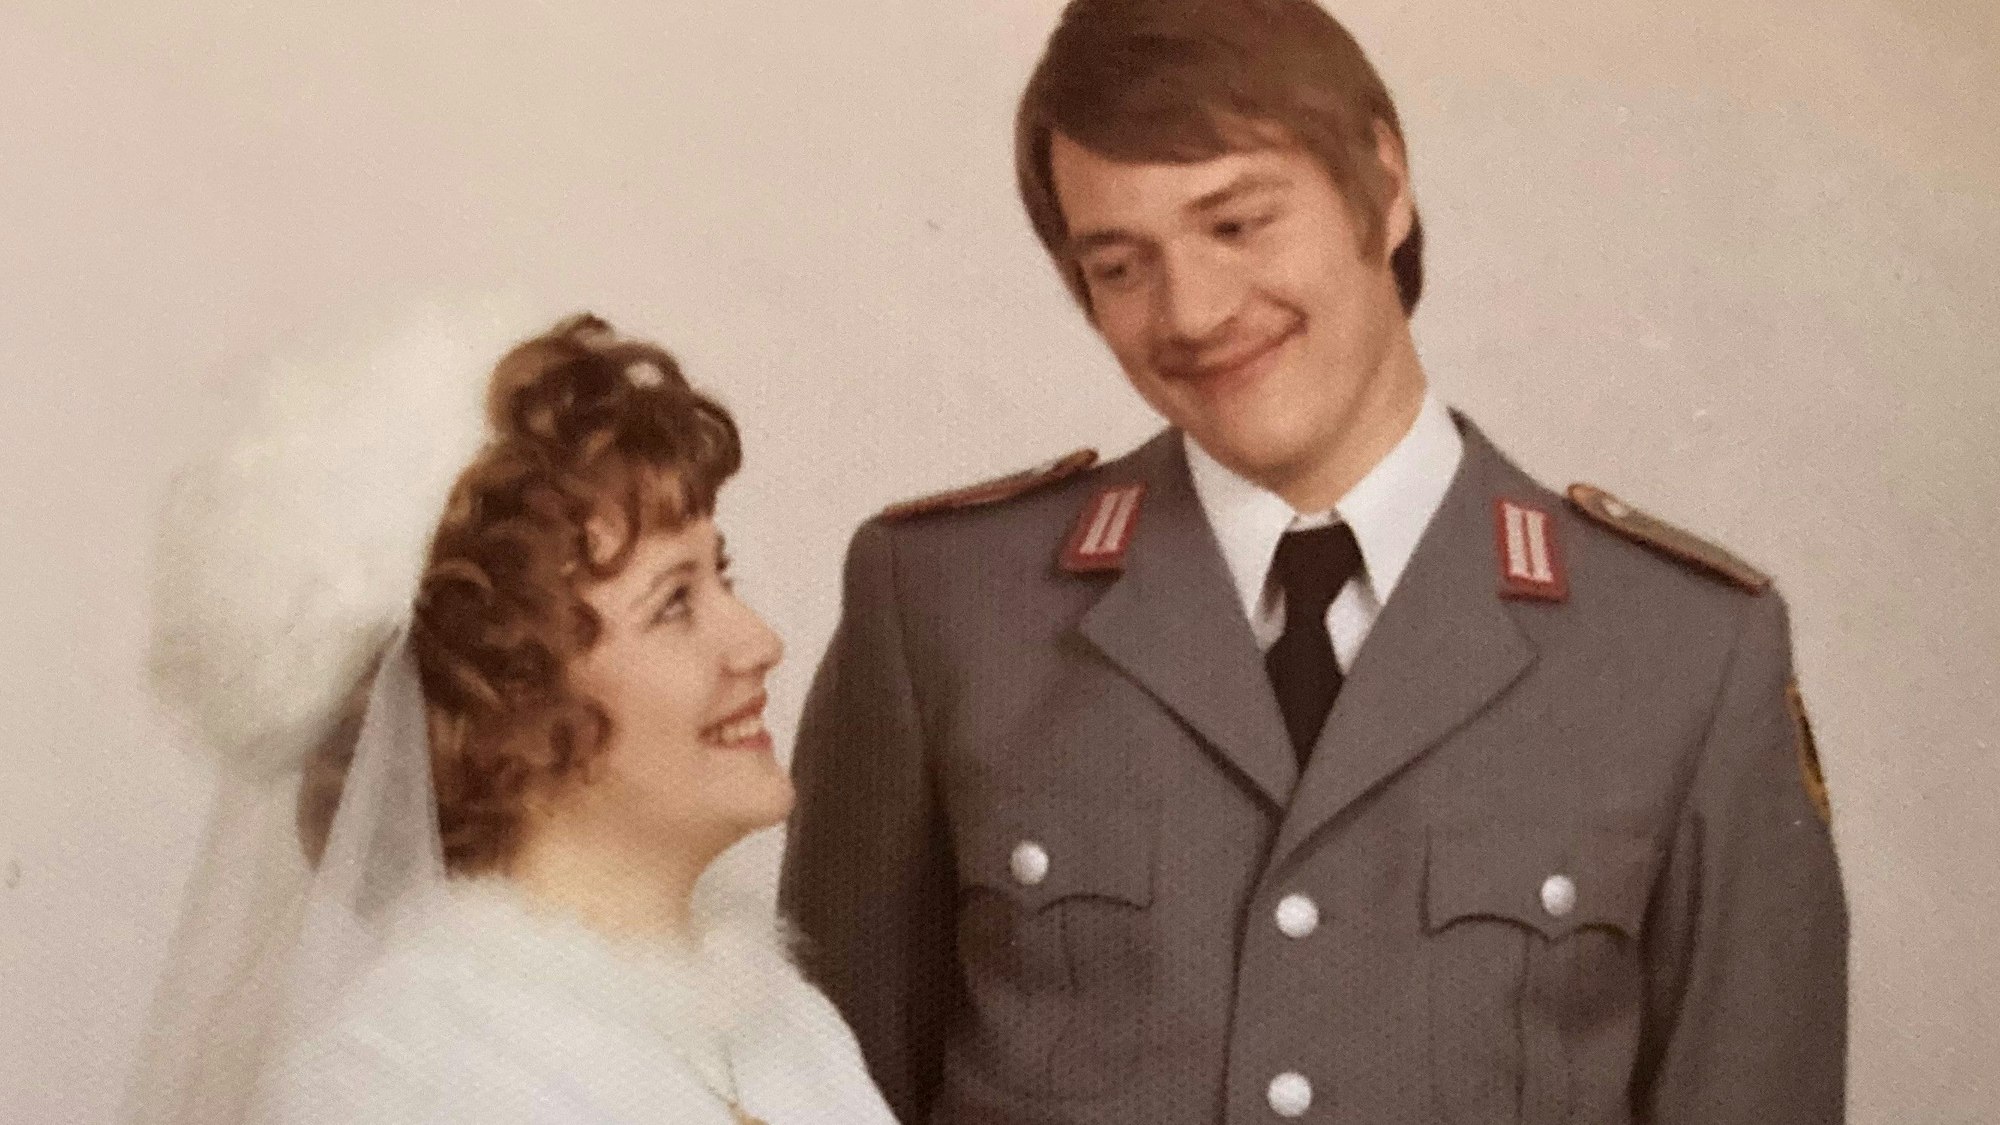 Am 22. Februar 1972 heirateten der Berufssoldat Jürgen Moritz und die Arzthelferin Elke in einer Nümbrechter Kirche. Beide stammen aus der heutigen Schlossgemeinde. Dies ist ein Repro des Hochzeitsbildes von damals.